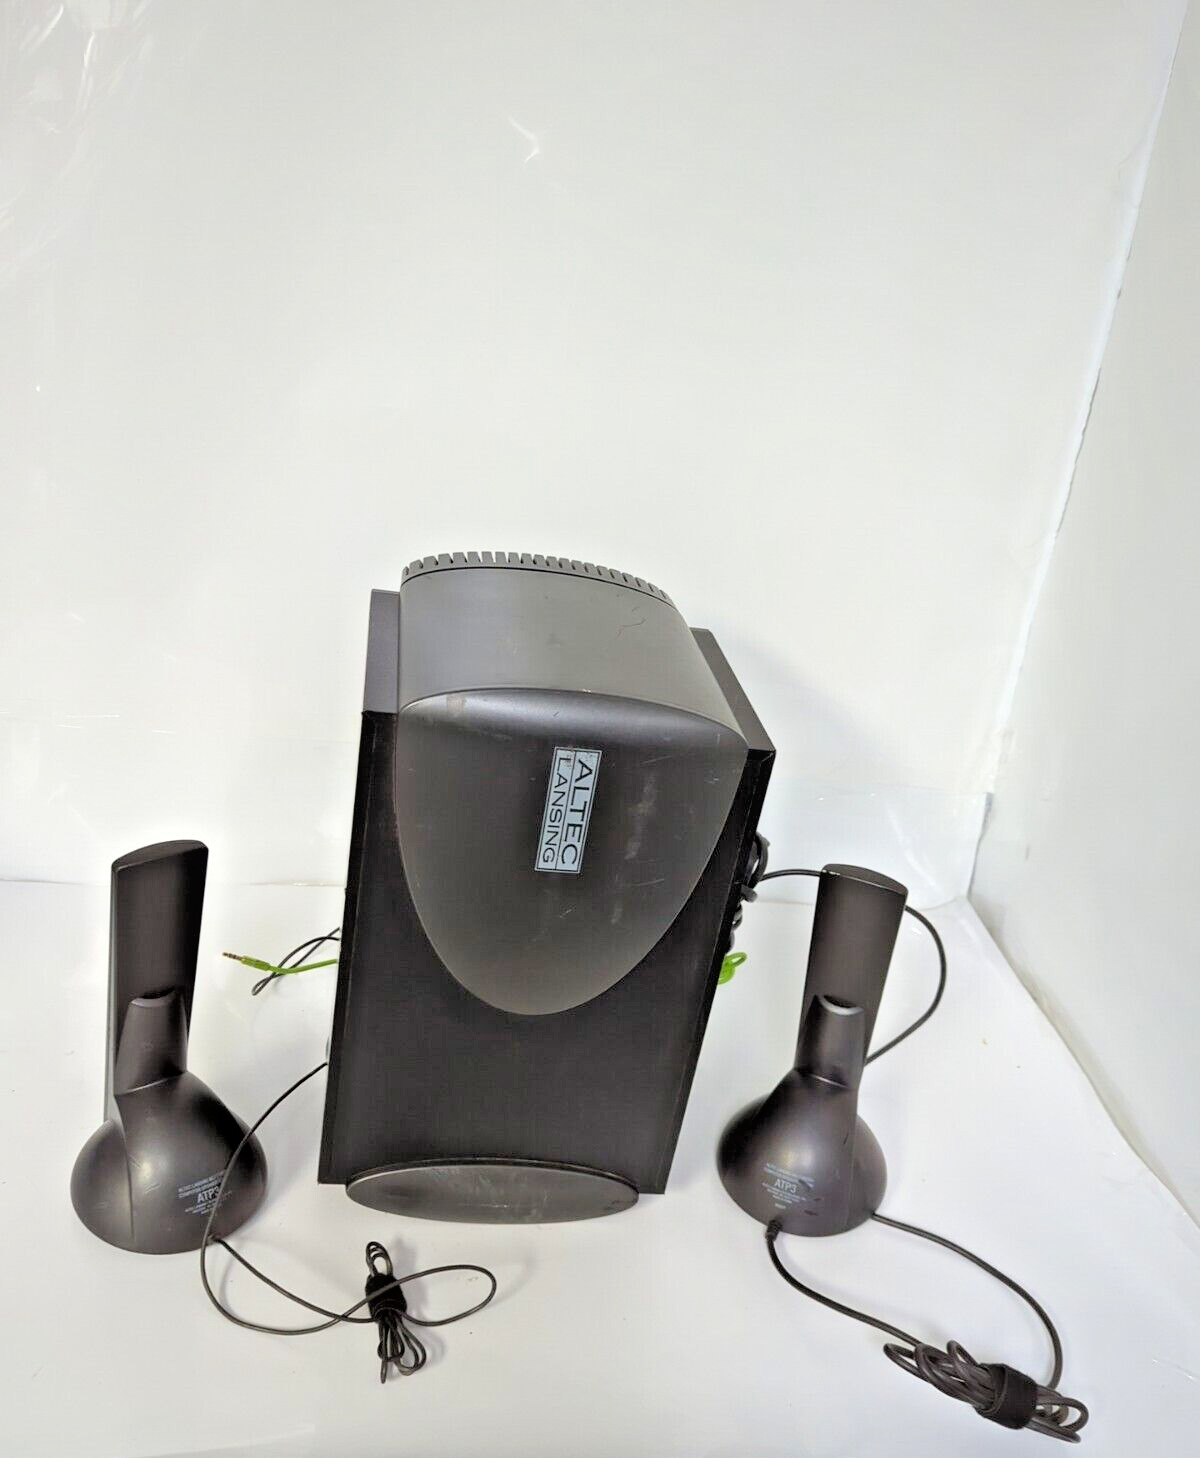 Altec Lansing ATP3 Multimedia Computer Subwoofer & Surround Speakers